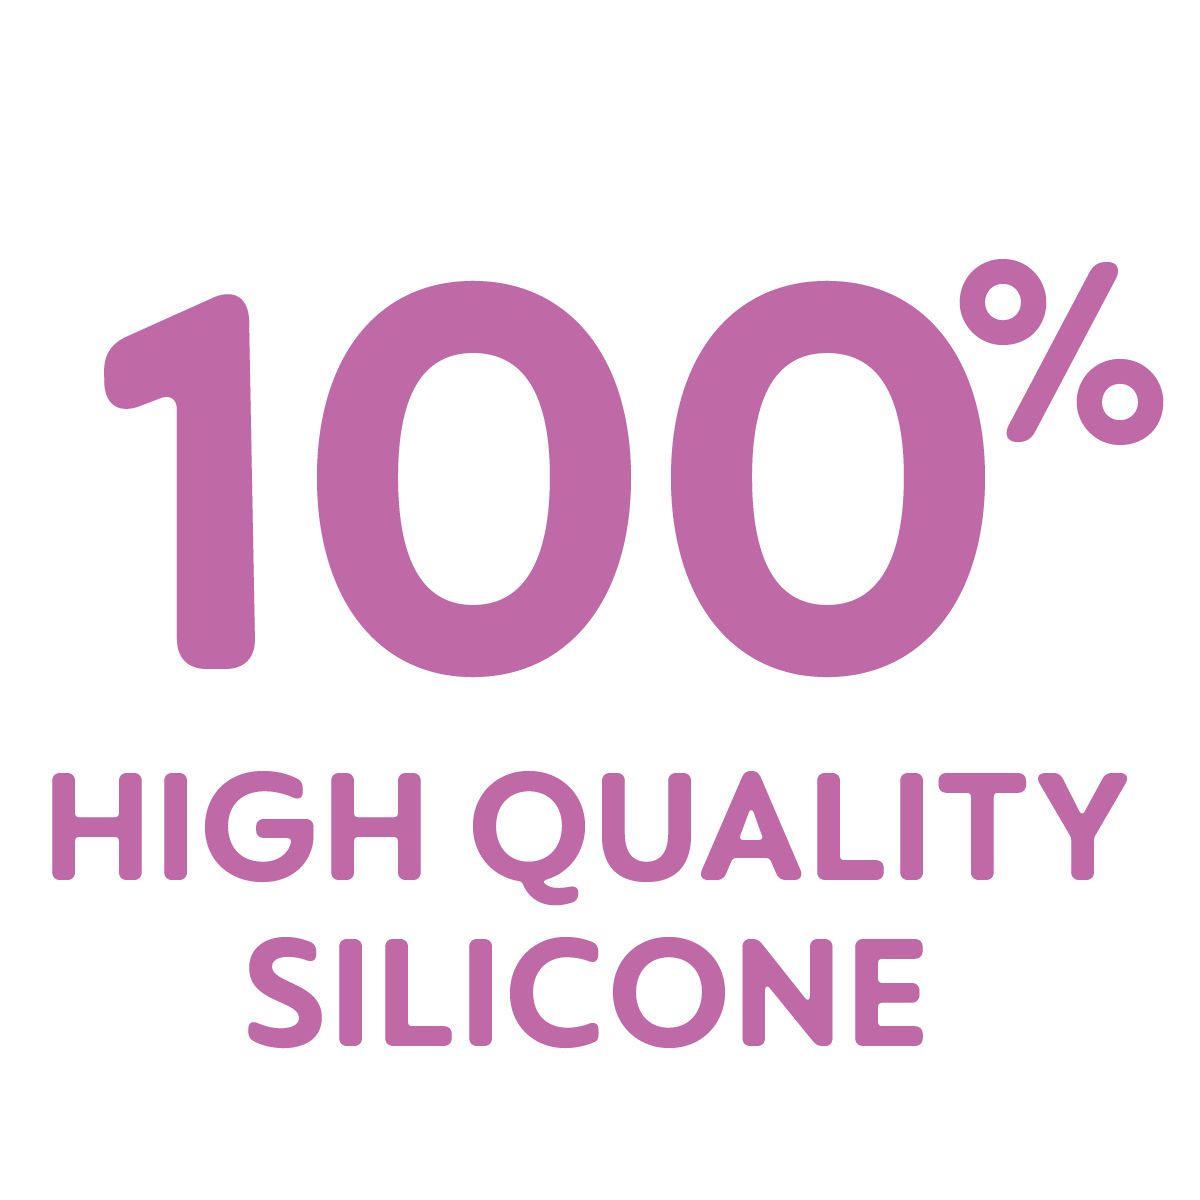 Produkt wykonany w 100% z wysokiej jakości silikonu – niezwykle higieniczny, trwały i bezpieczny